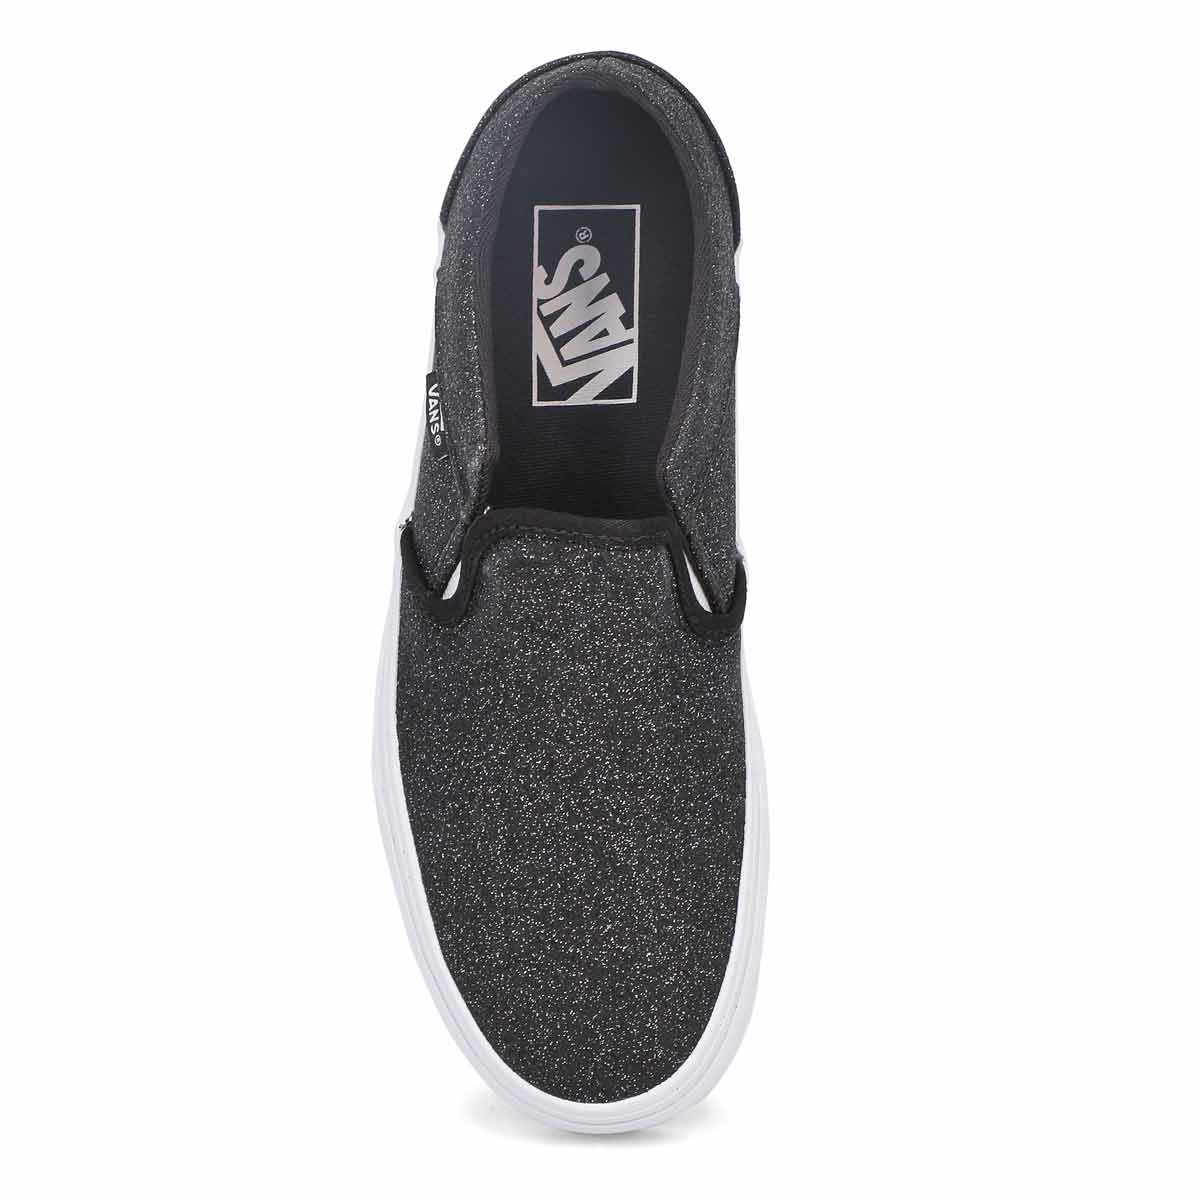 Vans Women's Asher Sneaker - Glitter Black | SoftMoc.com